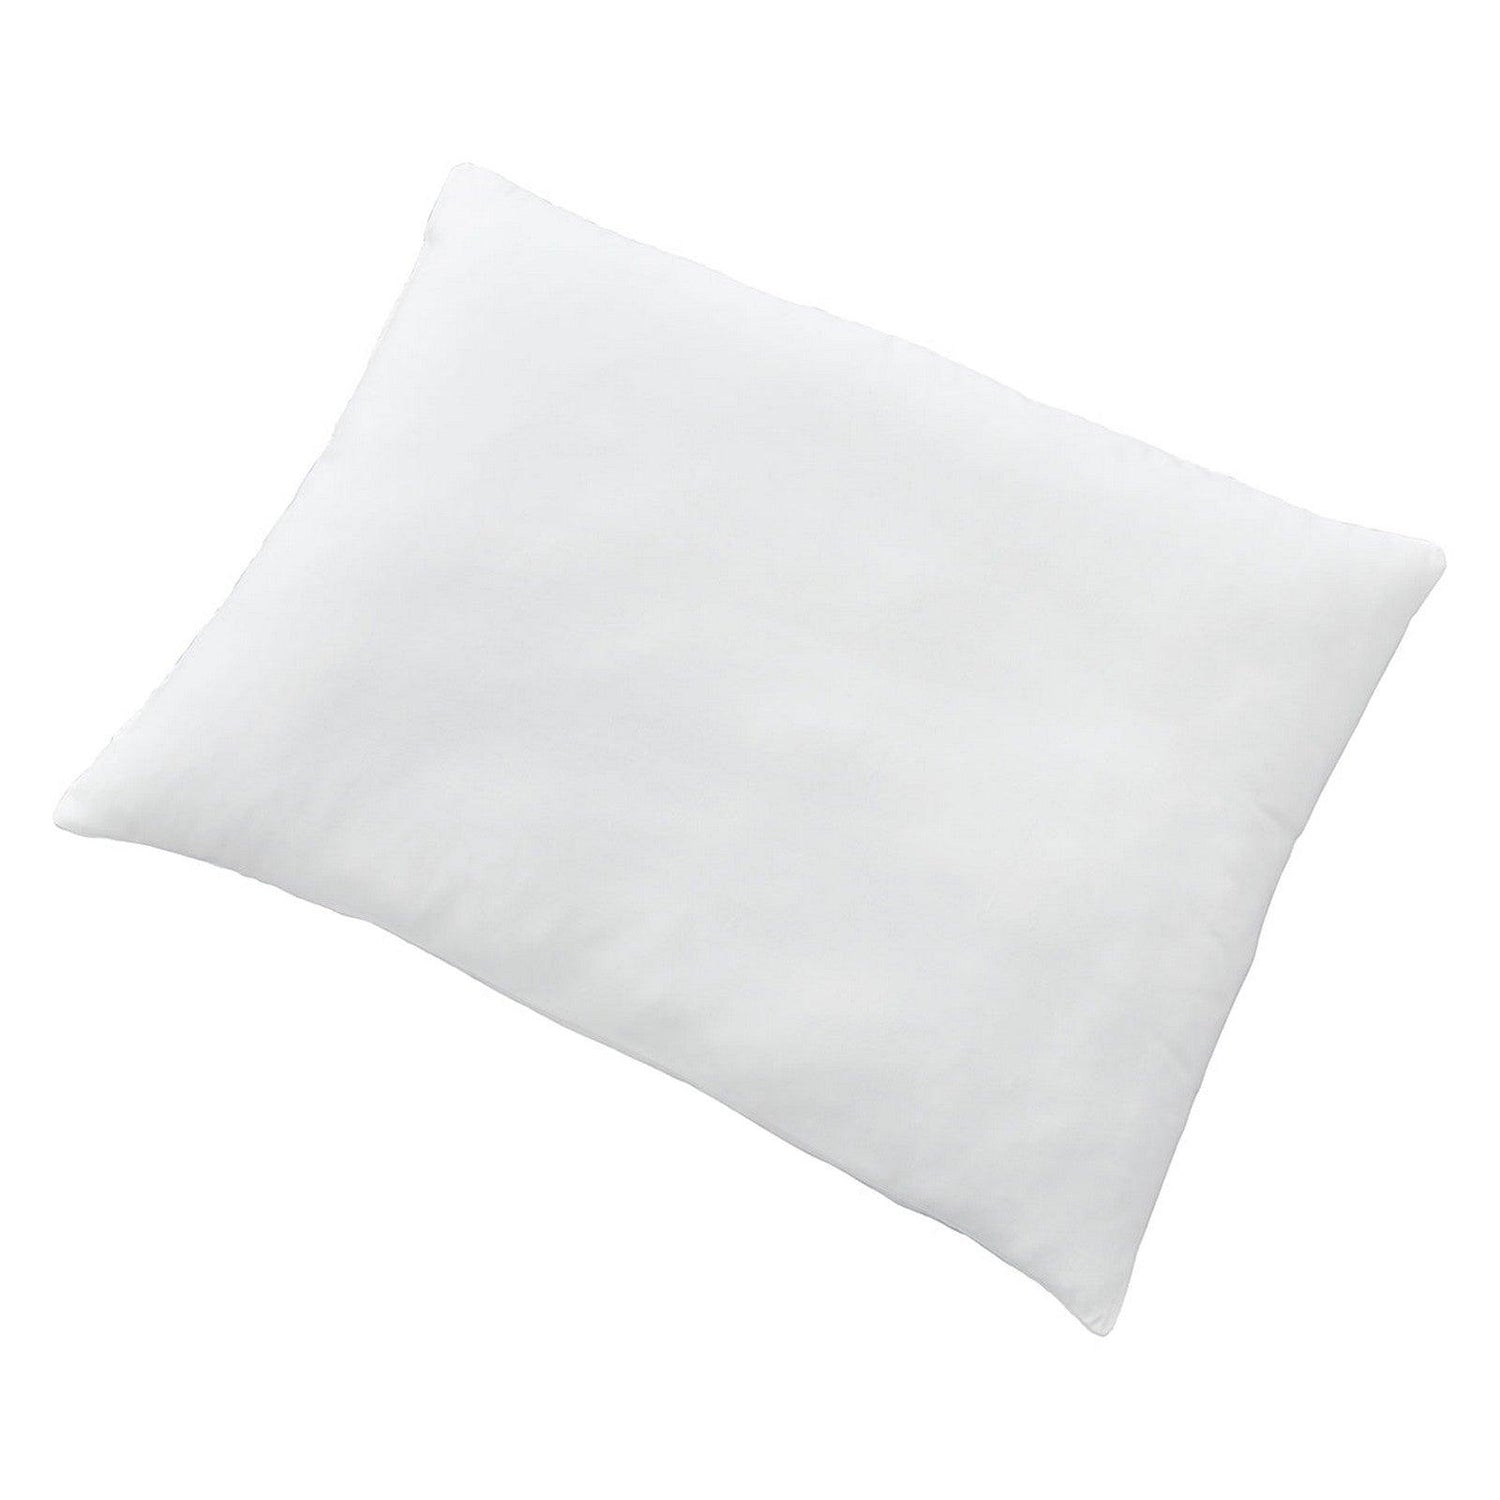 Z123 Pillow Series Soft Microfiber Pillow Ash-M82410P